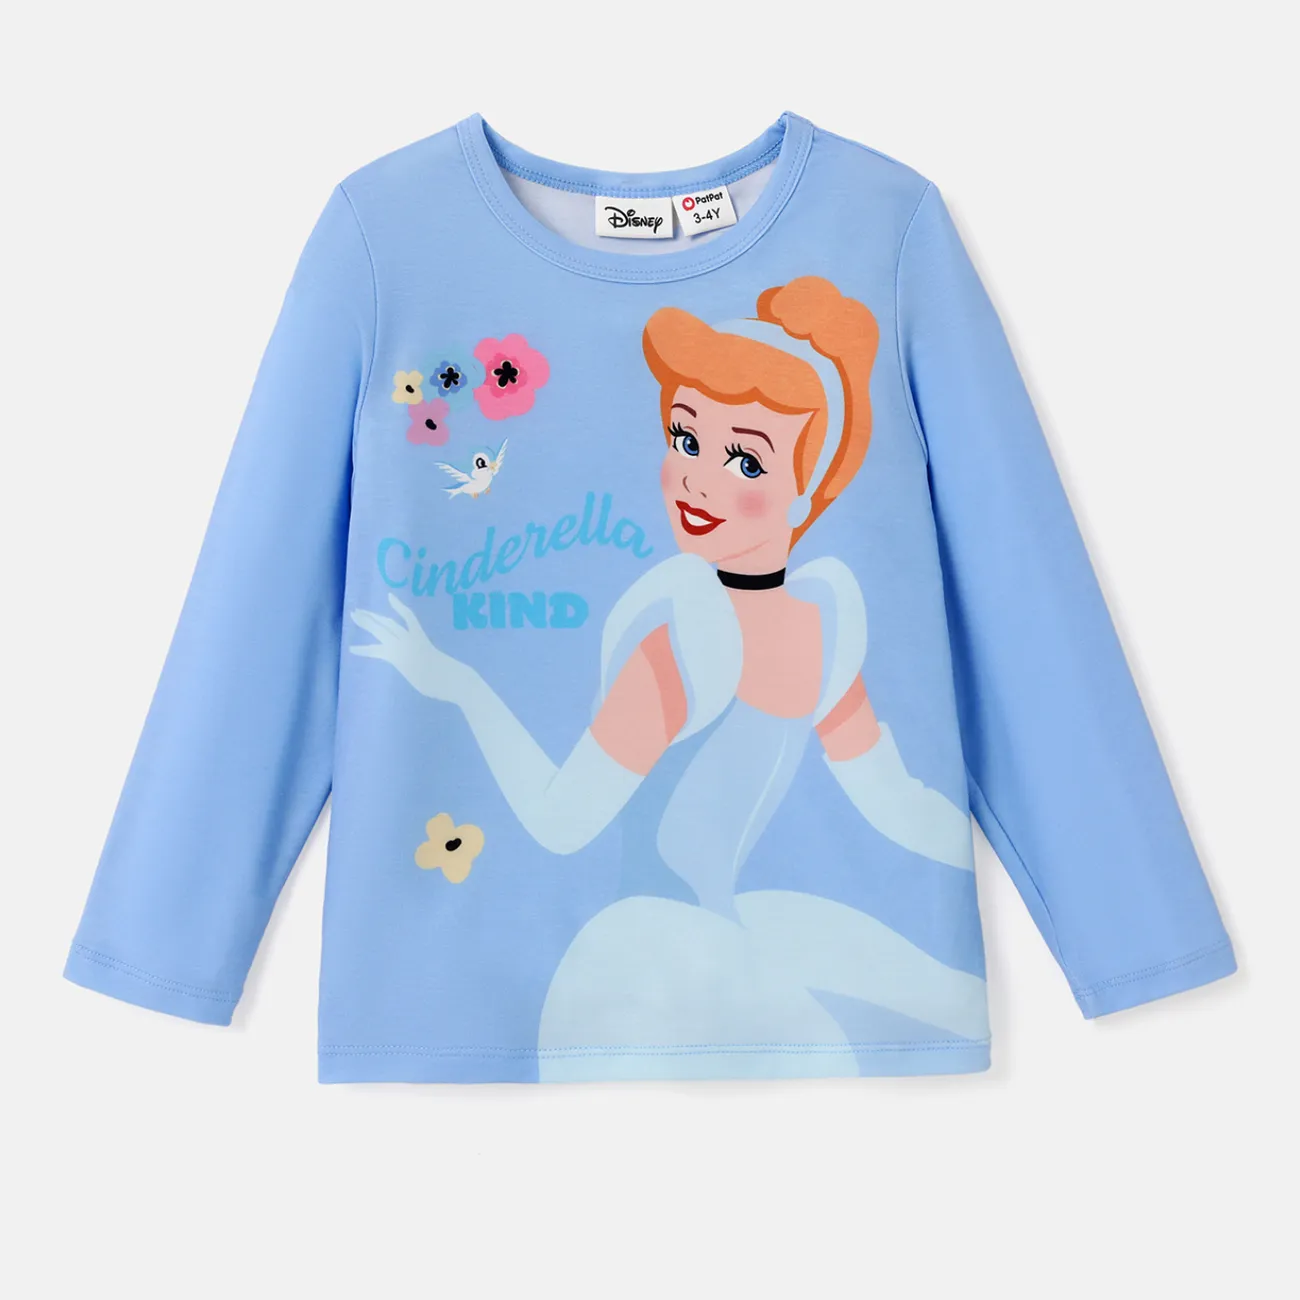 Disney Princess Toddler Girl Naia™ Character Print Long-sleeve Tee  Blue big image 1